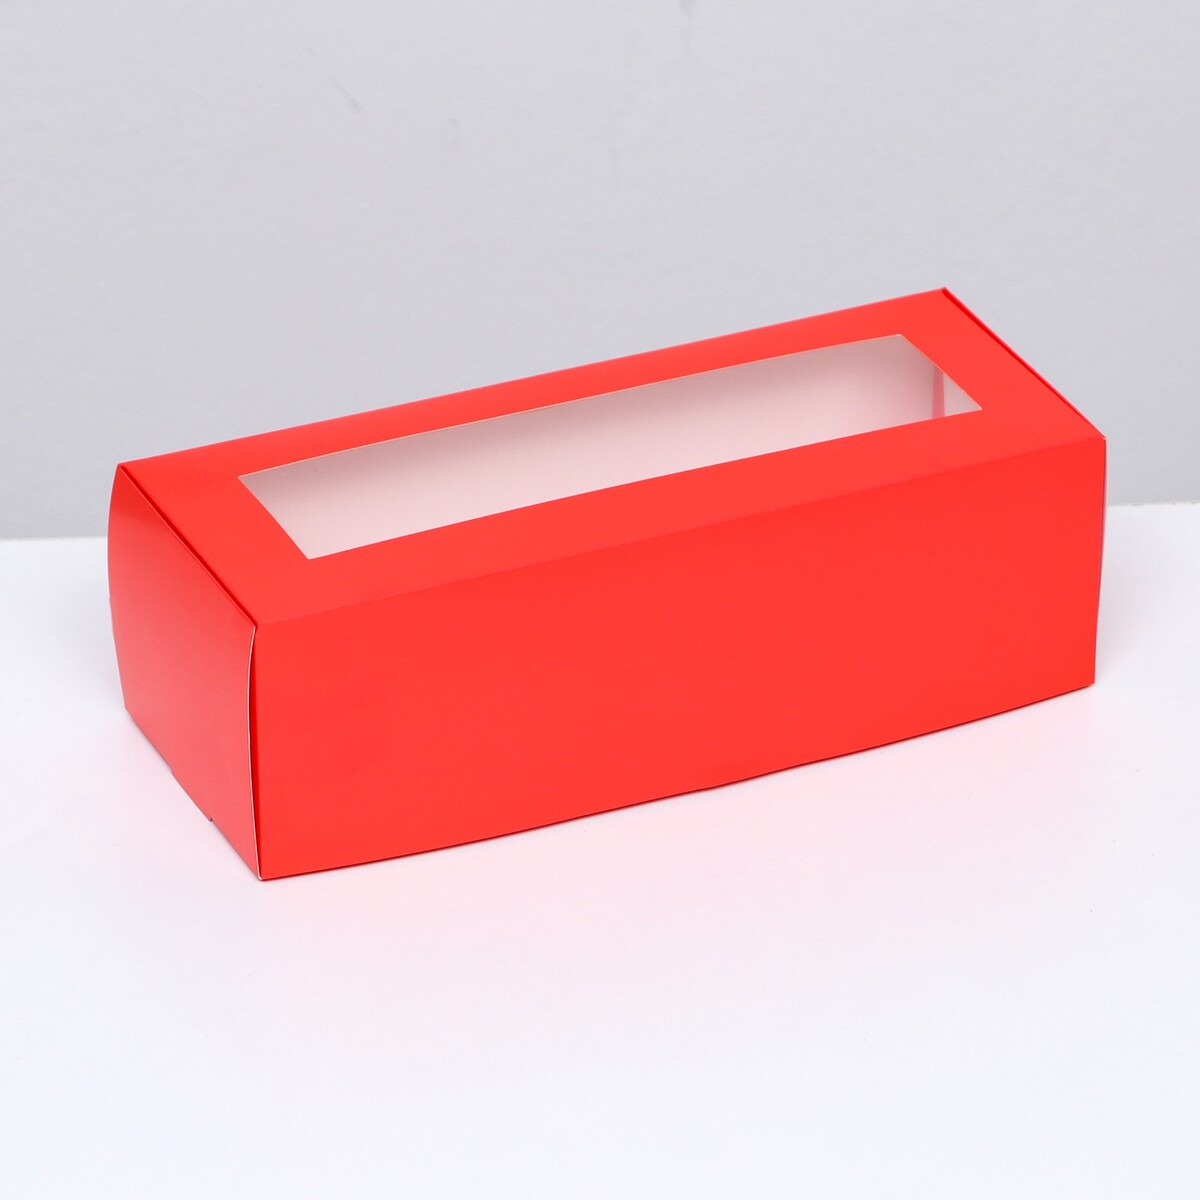 Коробка складная с окном под рулет, красная, 26 х 10 х 8 см коробка самосборная с окном красная 16 х 16 х 3 см